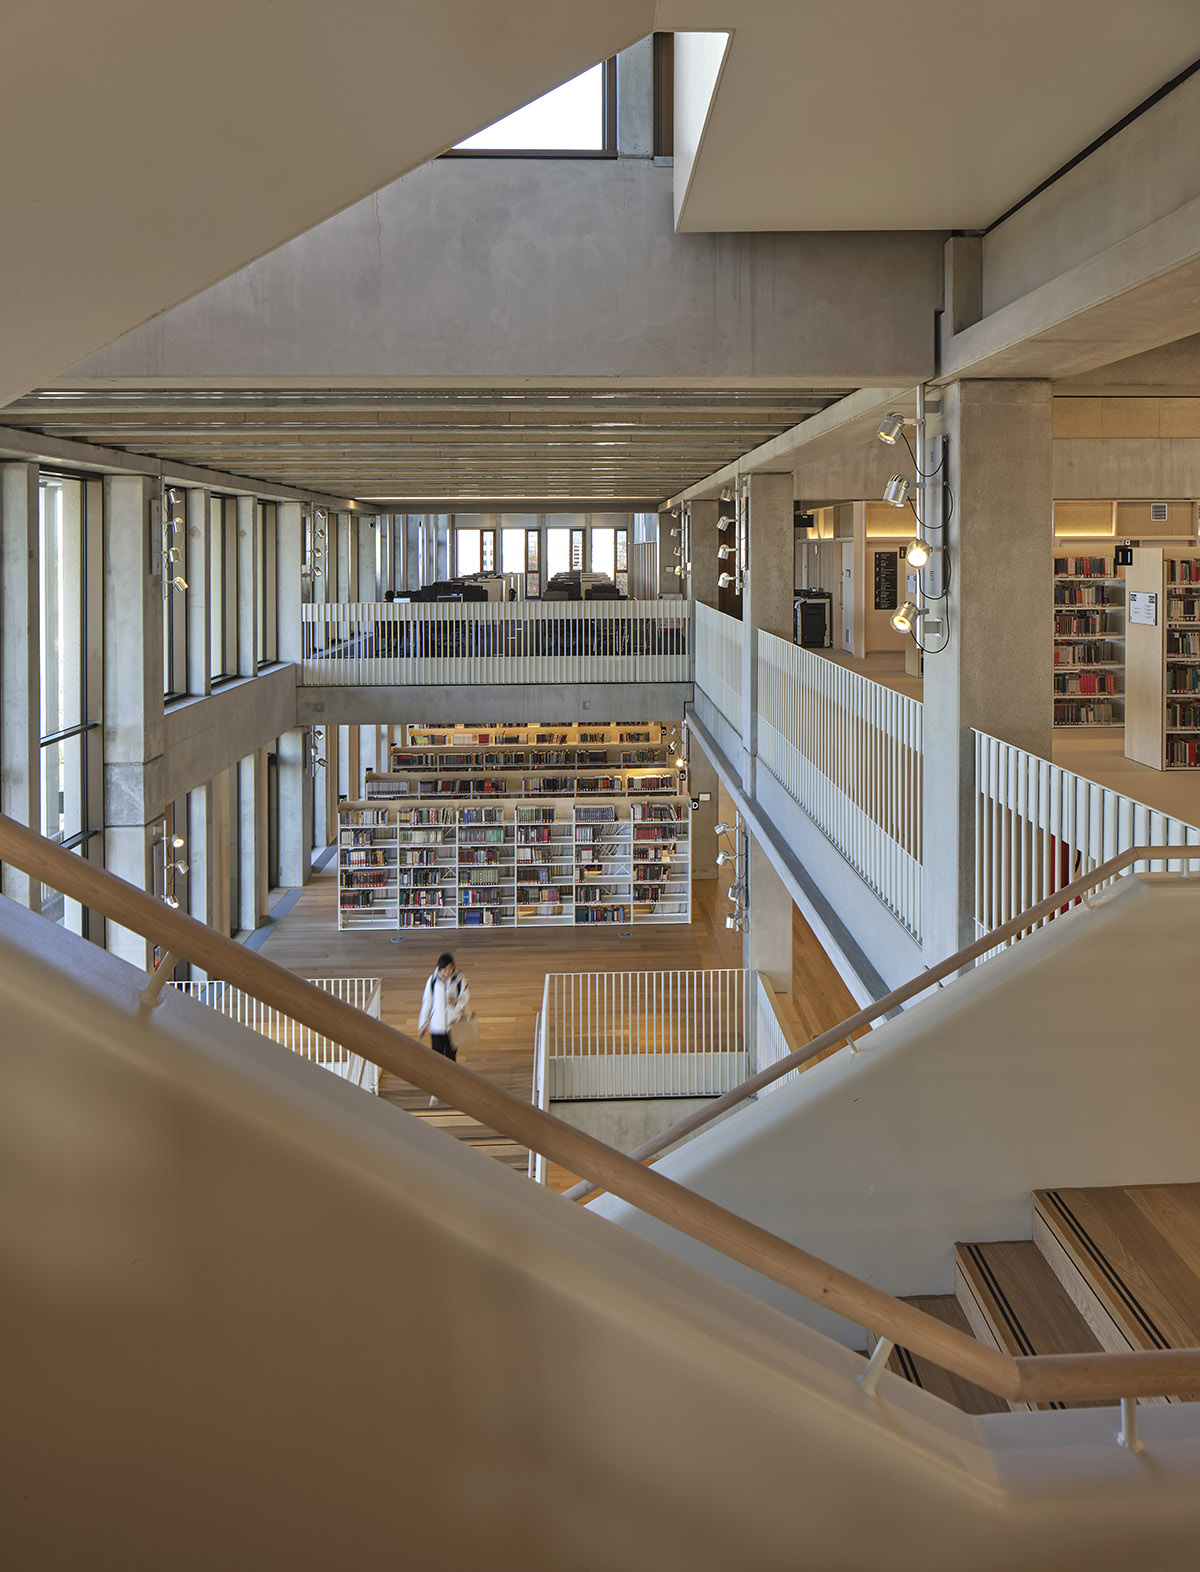 Таунхаус Grafton Architects - Кингстонский университет в Лондоне получил премию Миса ван дер Роэ 2022 года